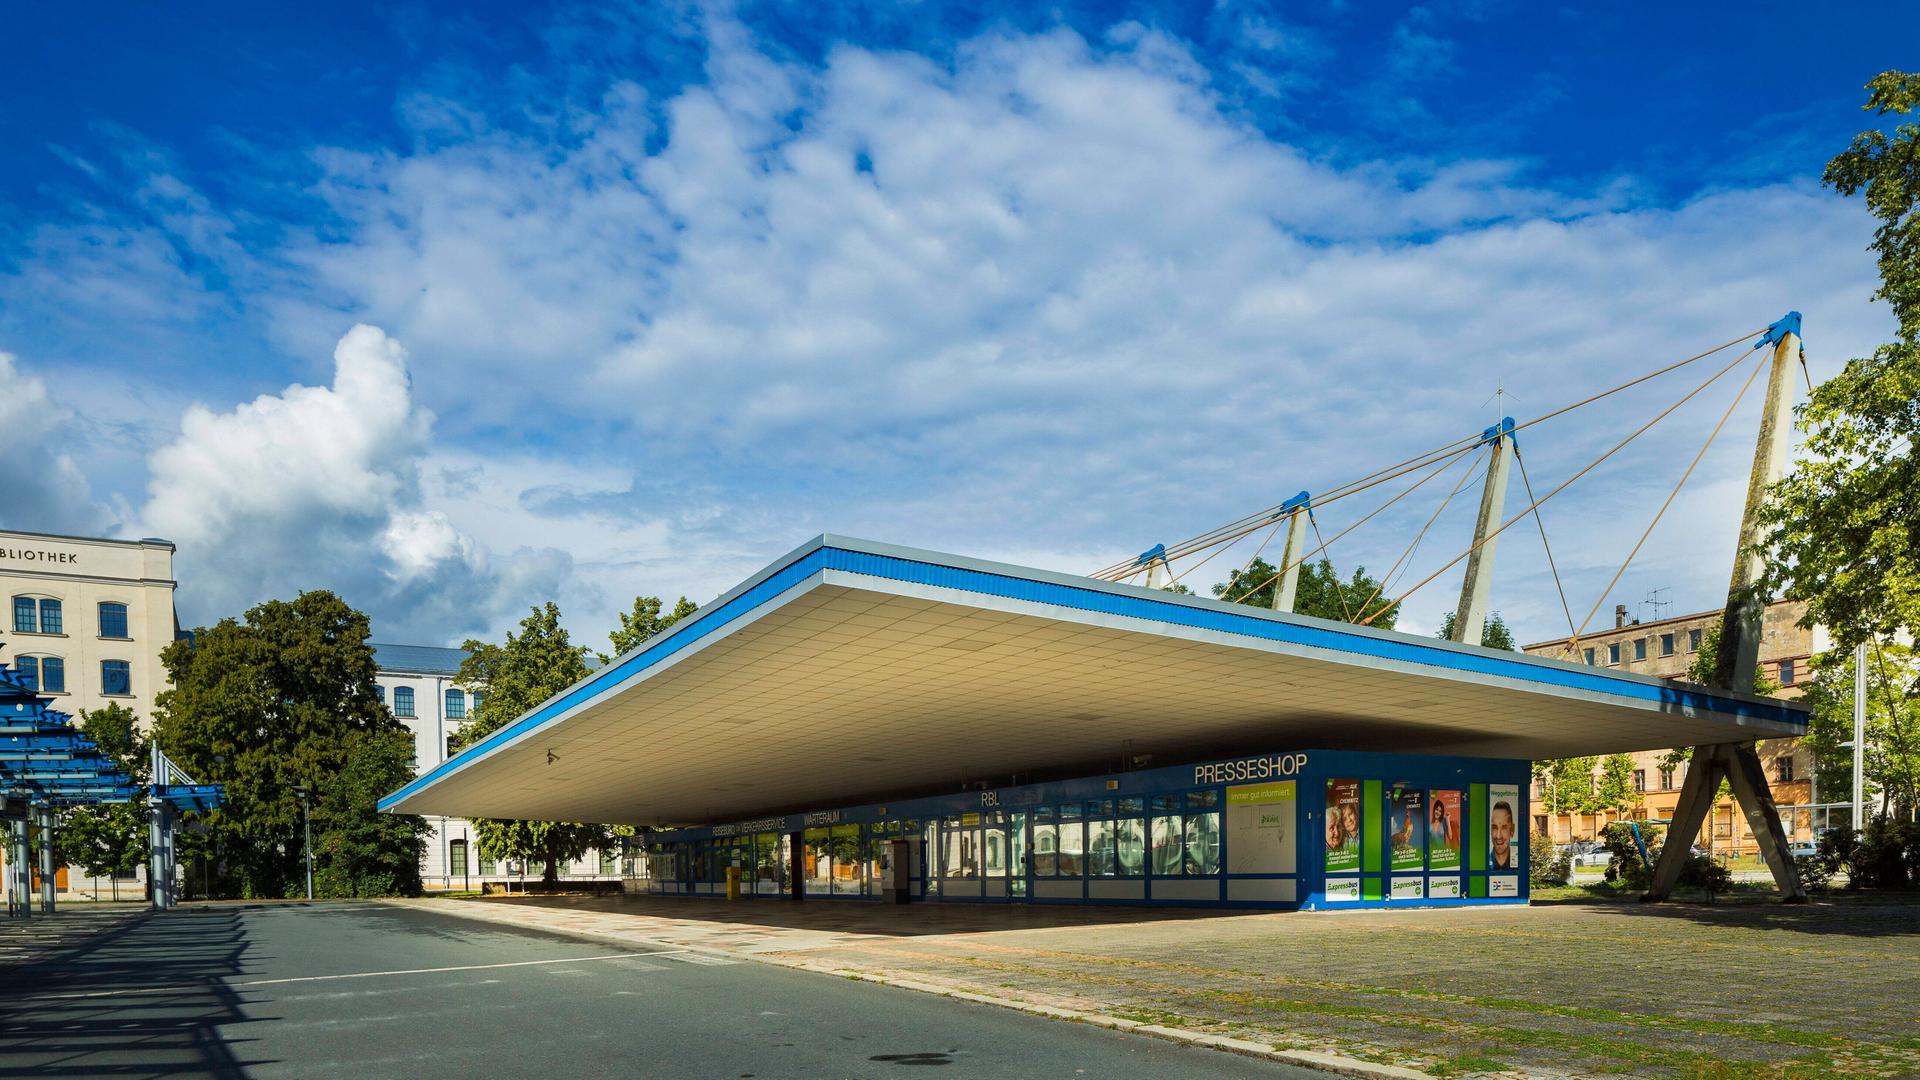 Der Busbahnhof in Chemnitz mit Pylonendach. Unter dem auslandenden Flachdach befinden sich Geschäftsräume.